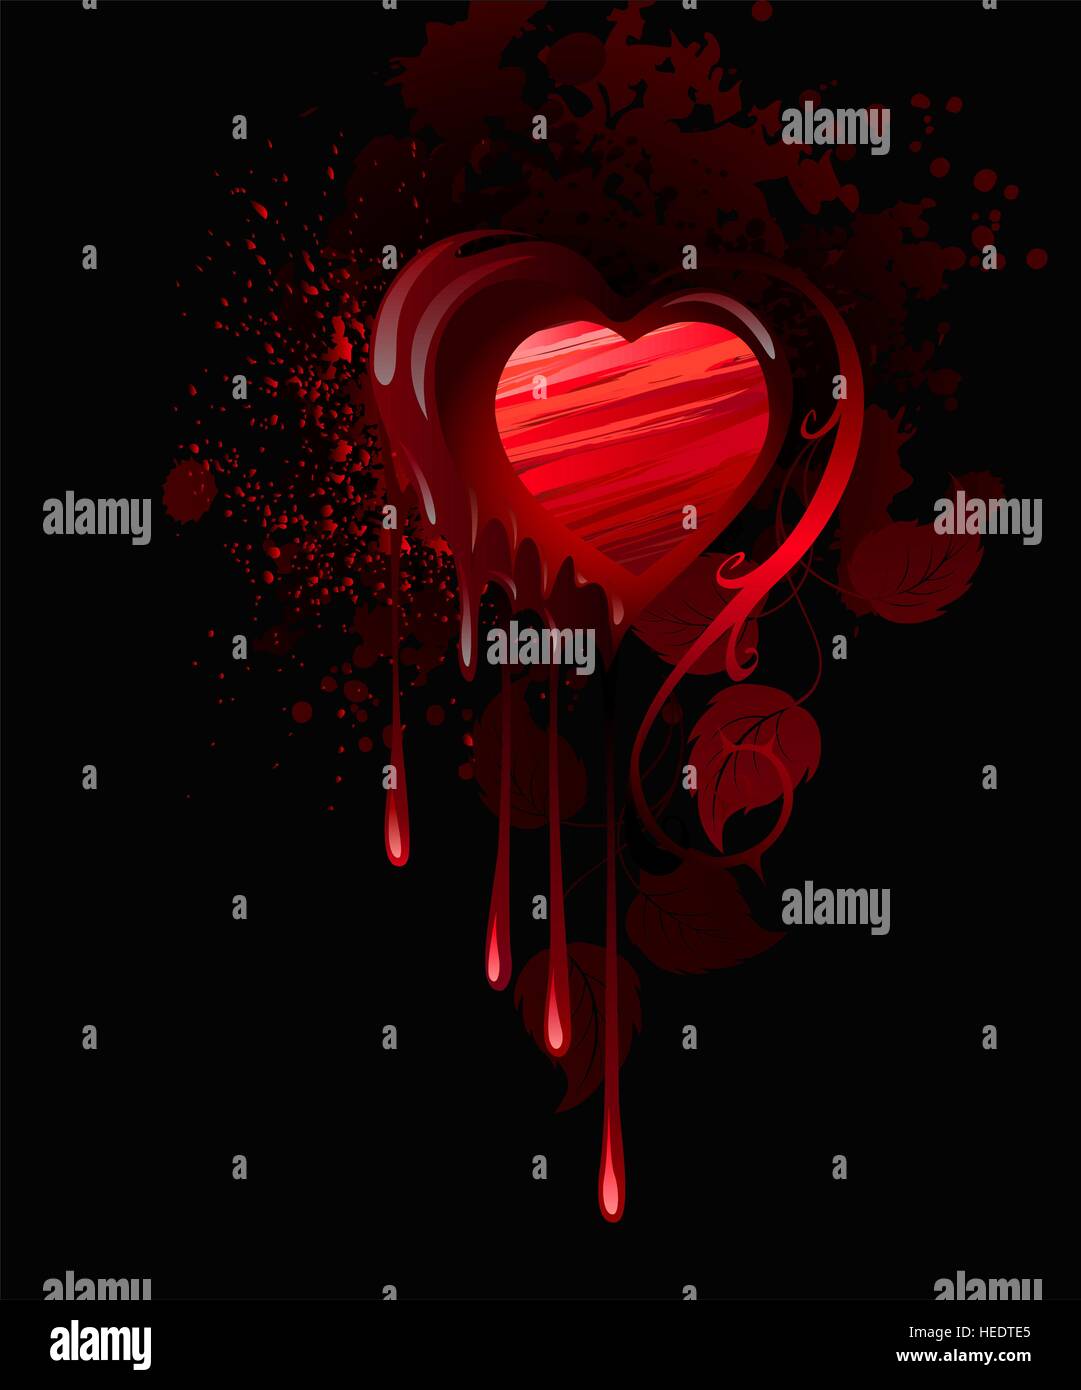 Herz, gezeichnet in roter Farbe und verziert mit Blättern von Rosen auf einem dunklen Hintergrund. Stock Vektor